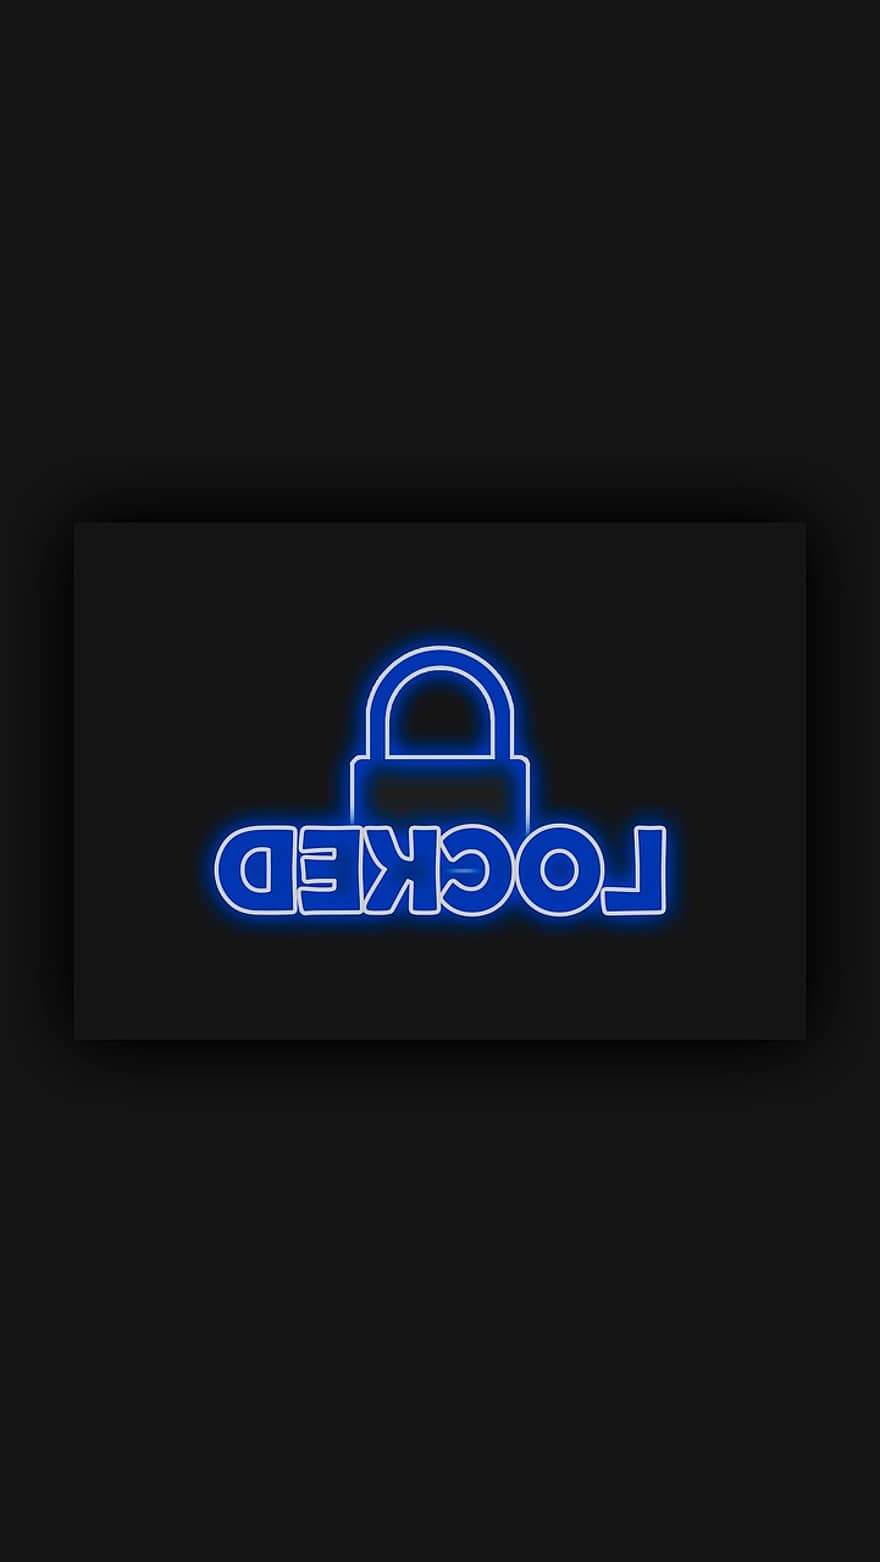 κλειδωμένο, σημάδι, σύμβολο, ασφάλεια, Ιστορικό, τηλέφωνο, ταπετσαρία, smartphone, κλειστό, λουκέτο, Διαδίκτυο